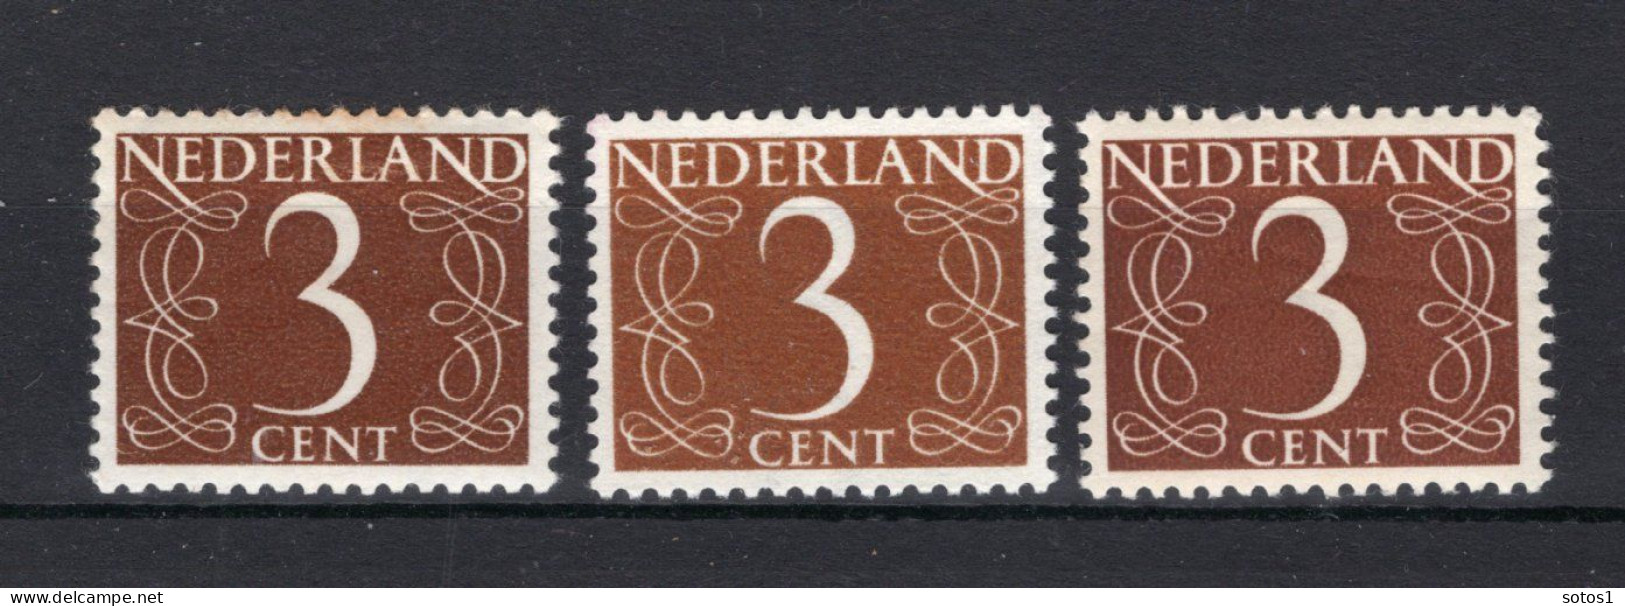 NEDERLAND 463 MNH 1946-1957 - Cijfer (3stuks) - Ungebraucht